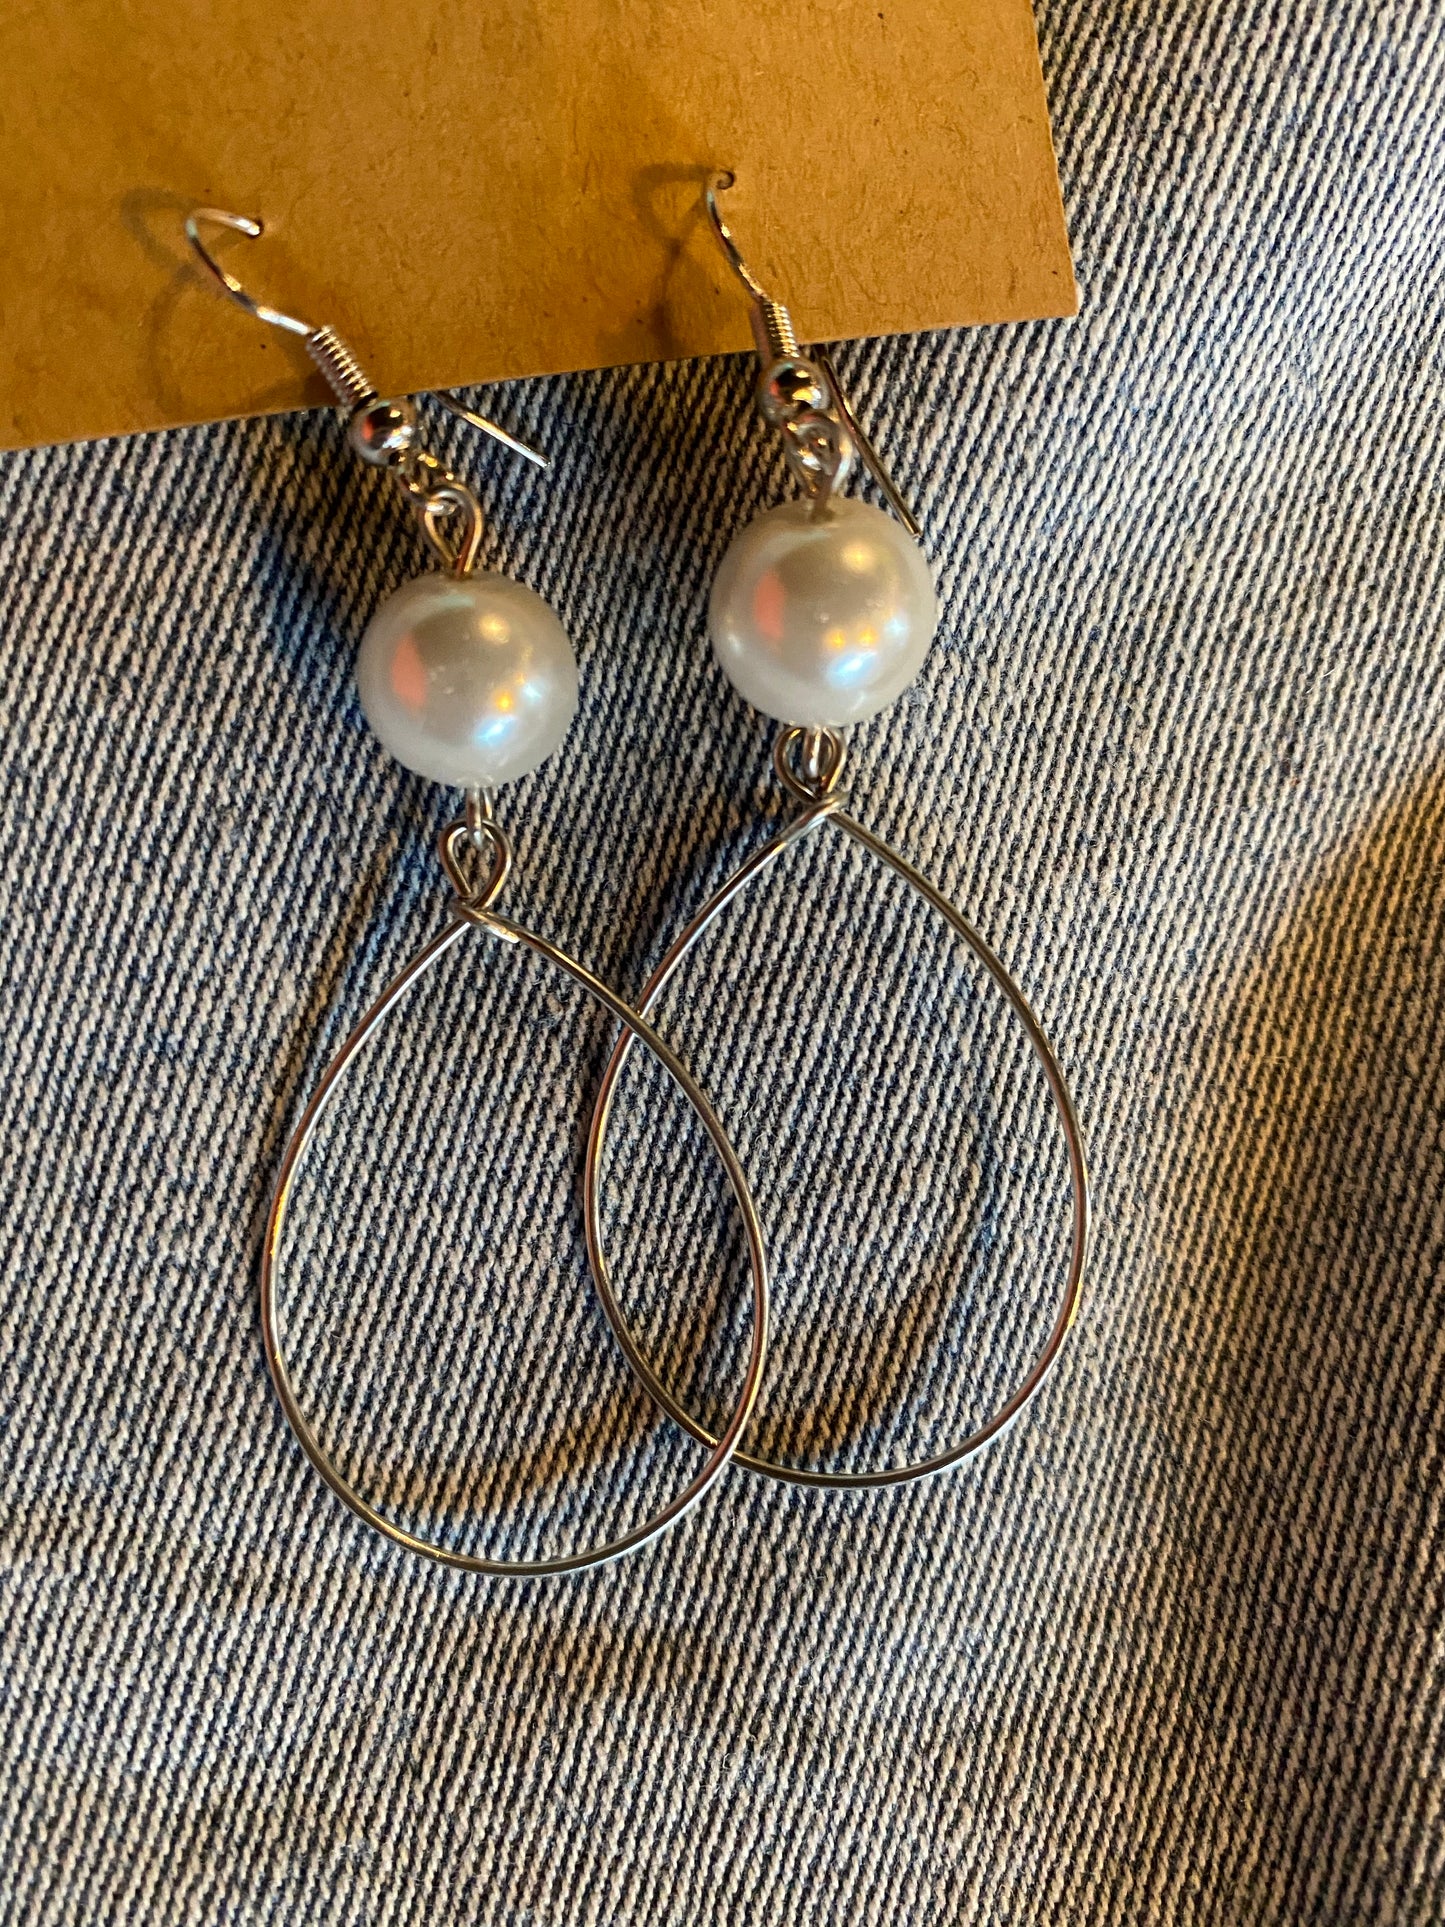 large pearl on top of wire hoop earrings